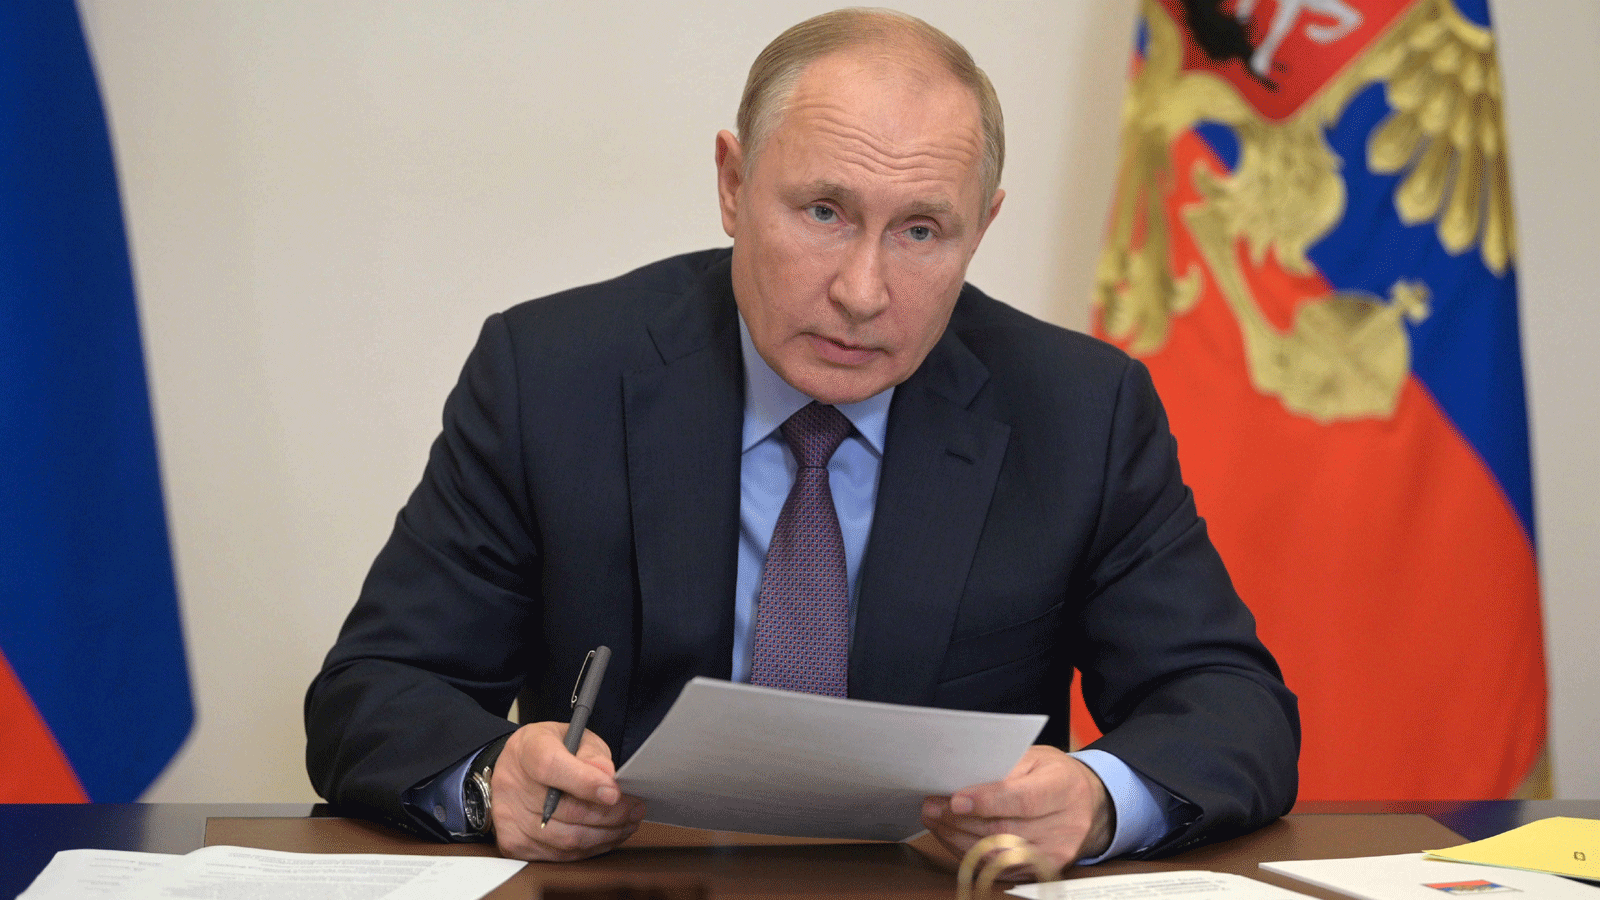 صورة للرئيس الروسي فلاديمير بوتين نشرتها صفحة الرئاسة الروسية الموثقة على 